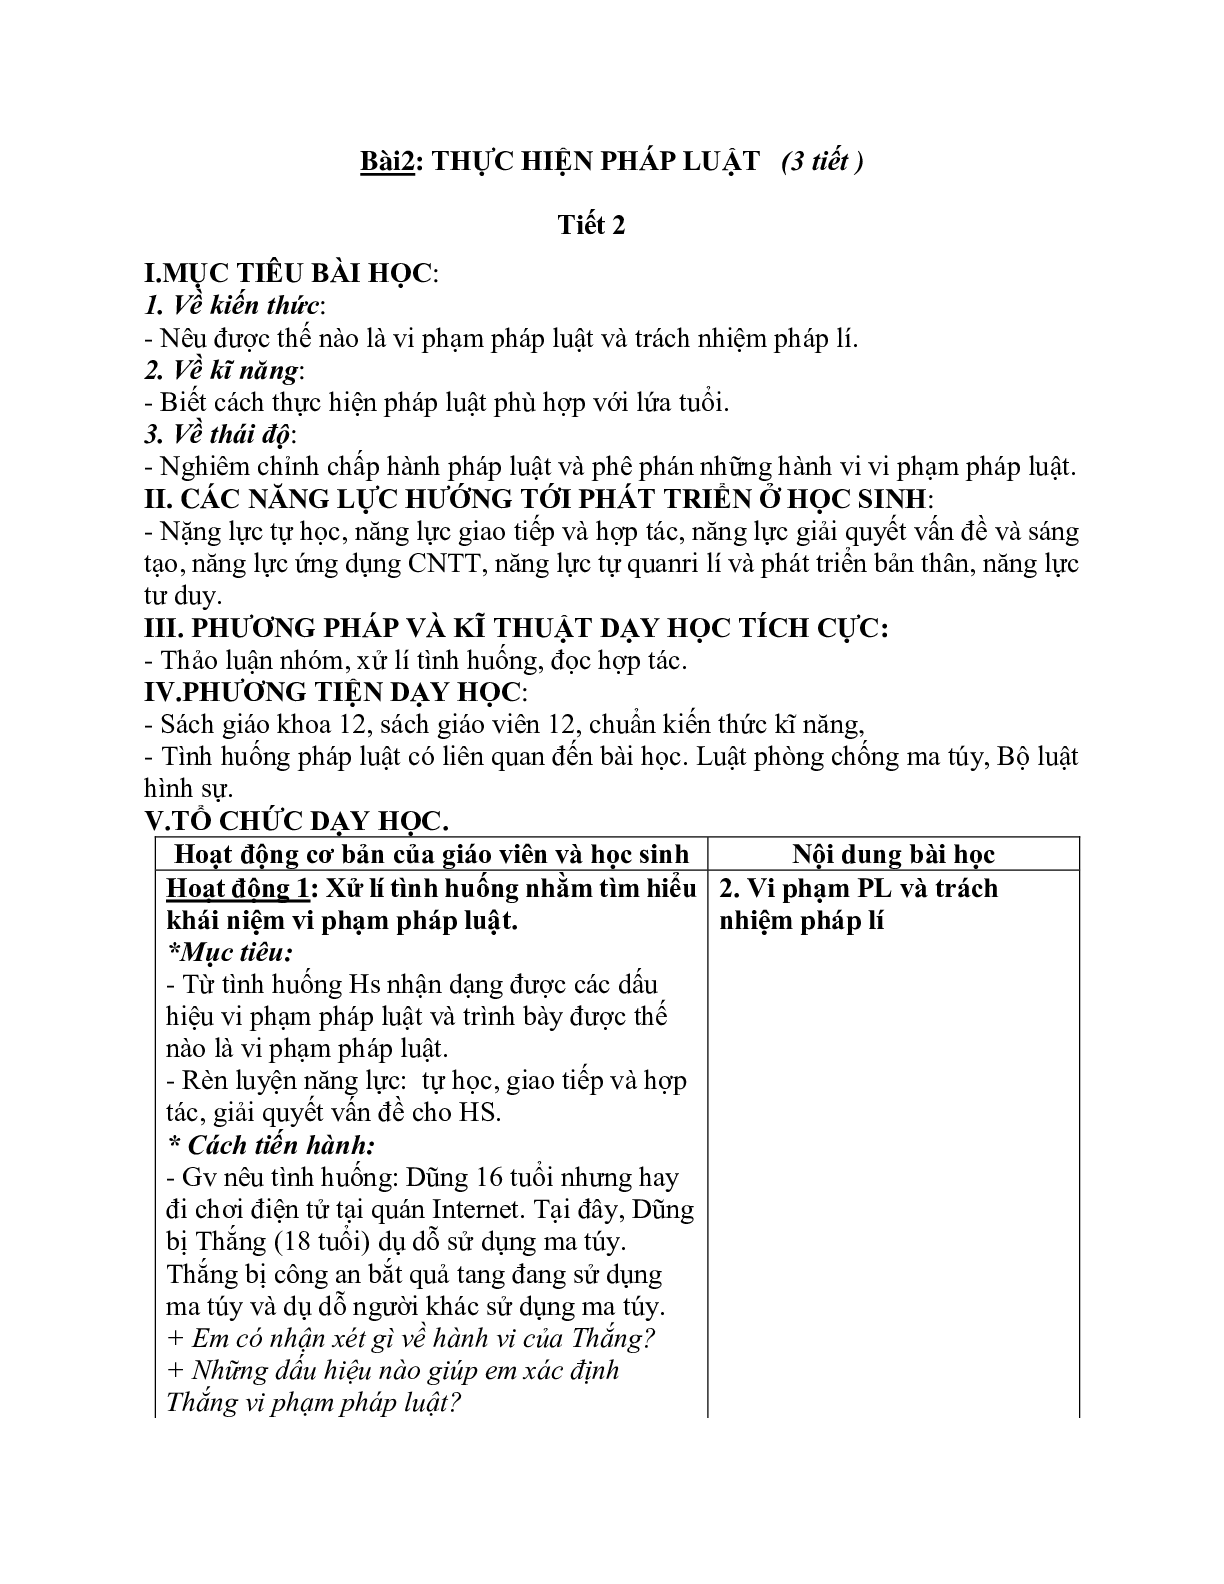 Giáo án GDCD 12 Bài 2 Thực hiện pháp luật tiết 2 mới nhất (trang 1)